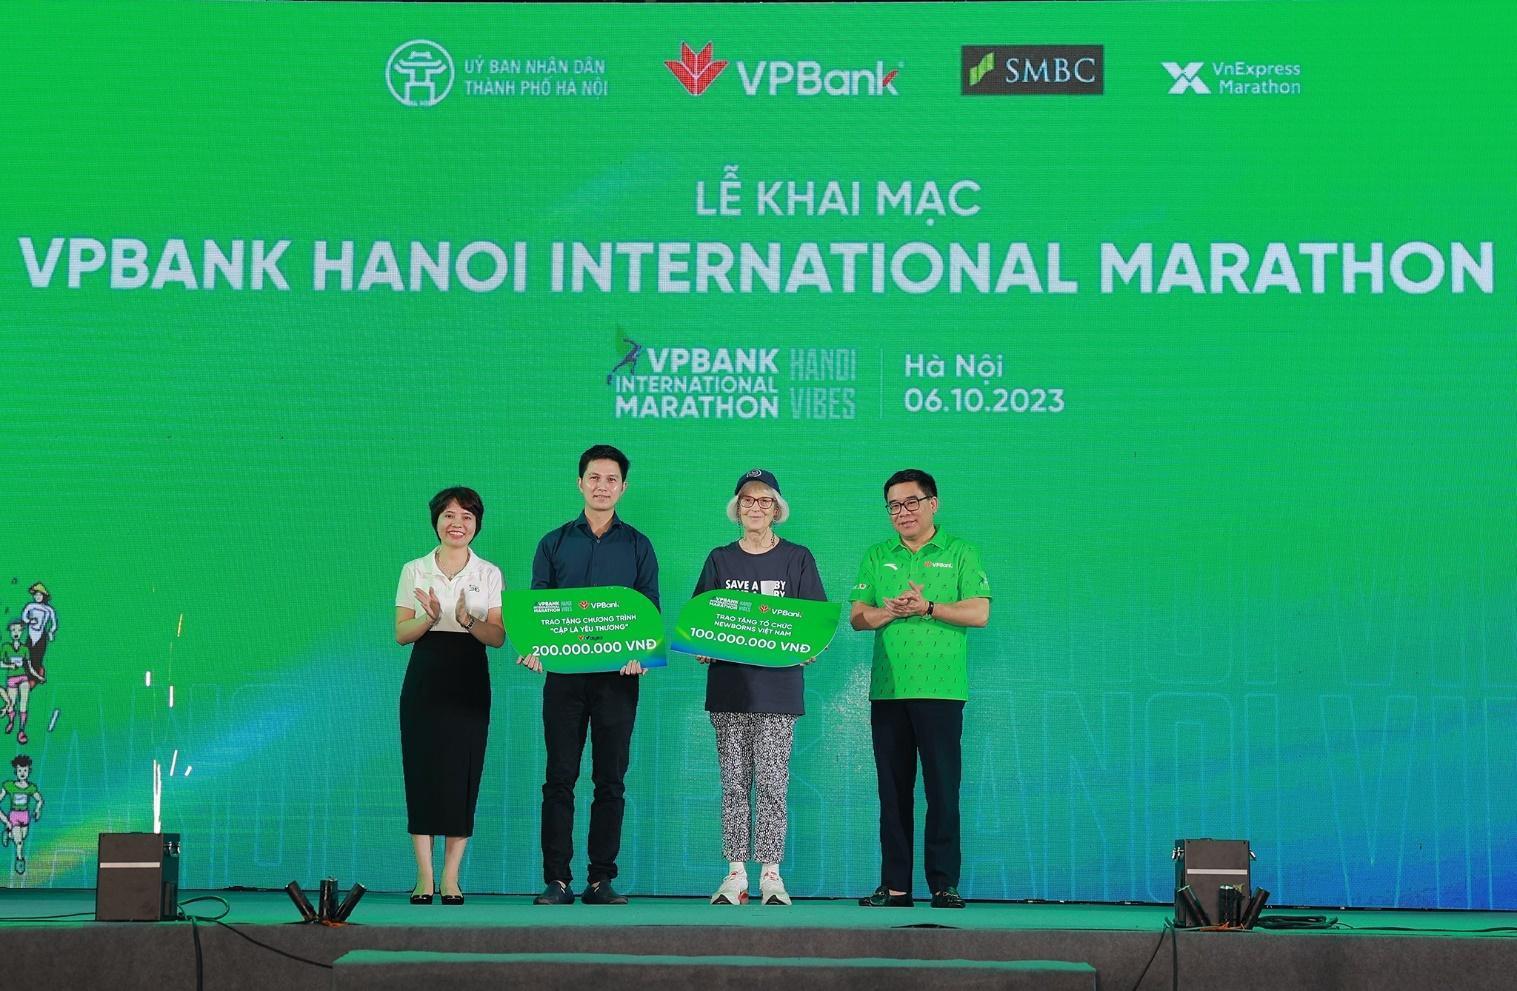 VPBank Hanoi International Marathon 2023: Giải chạy có hệ thống giải thưởng tiền mặt lớn bậc nhất từ trước đến nay - Ảnh 2.